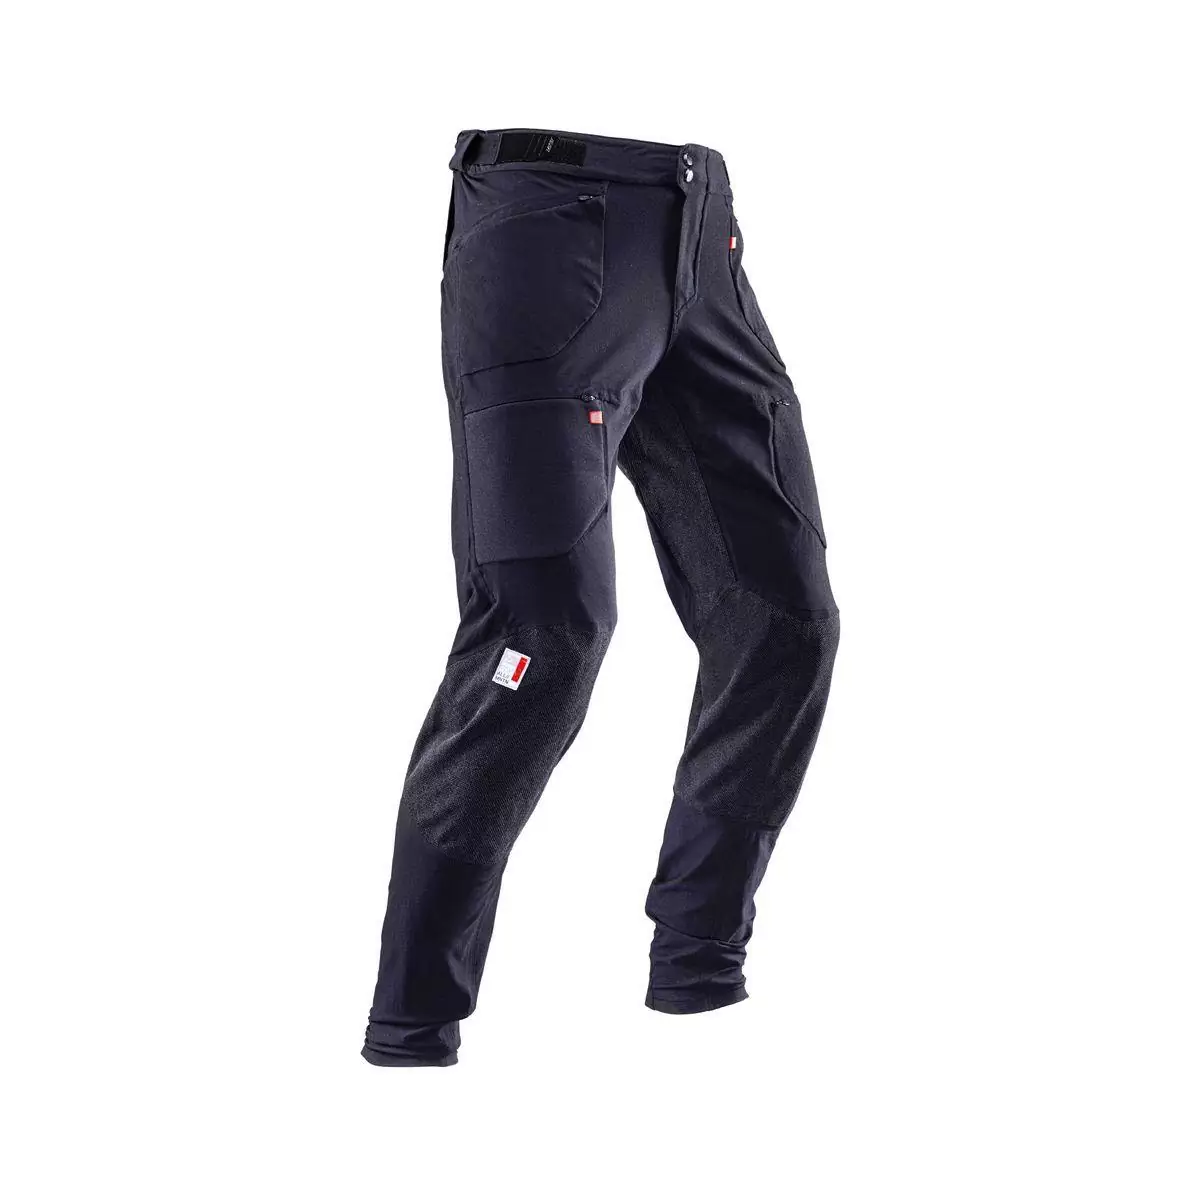 Allmtn 4.0 Long MTB Pants Black Size XL #2